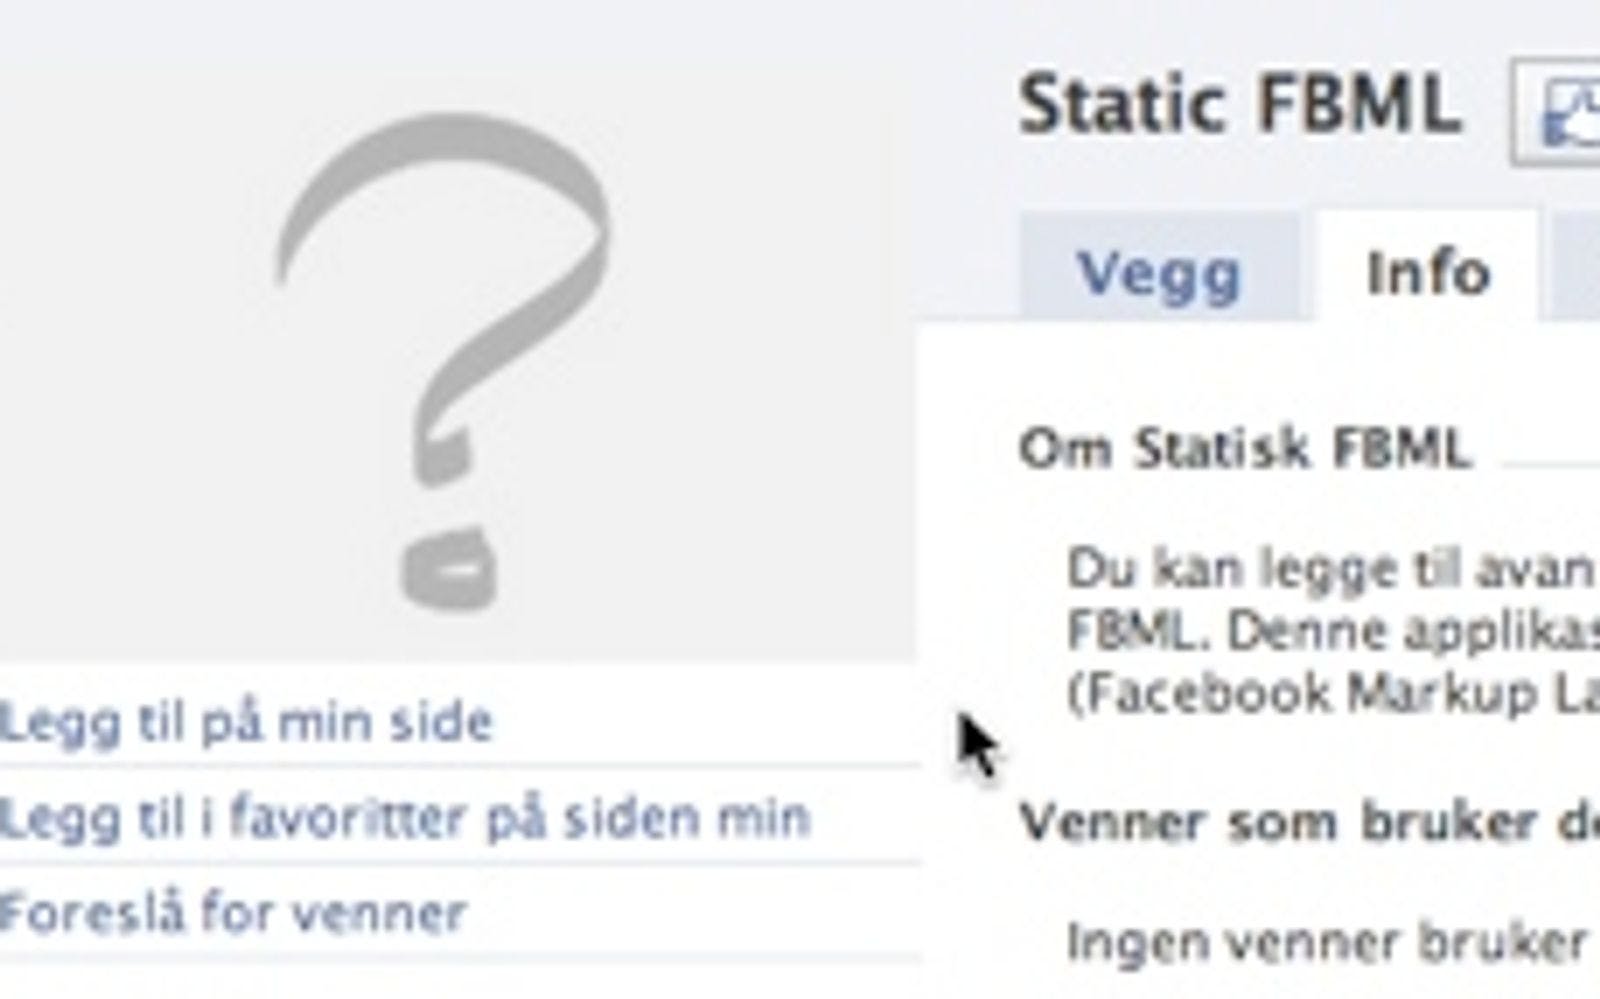 Static FBML Facebook applikasjon